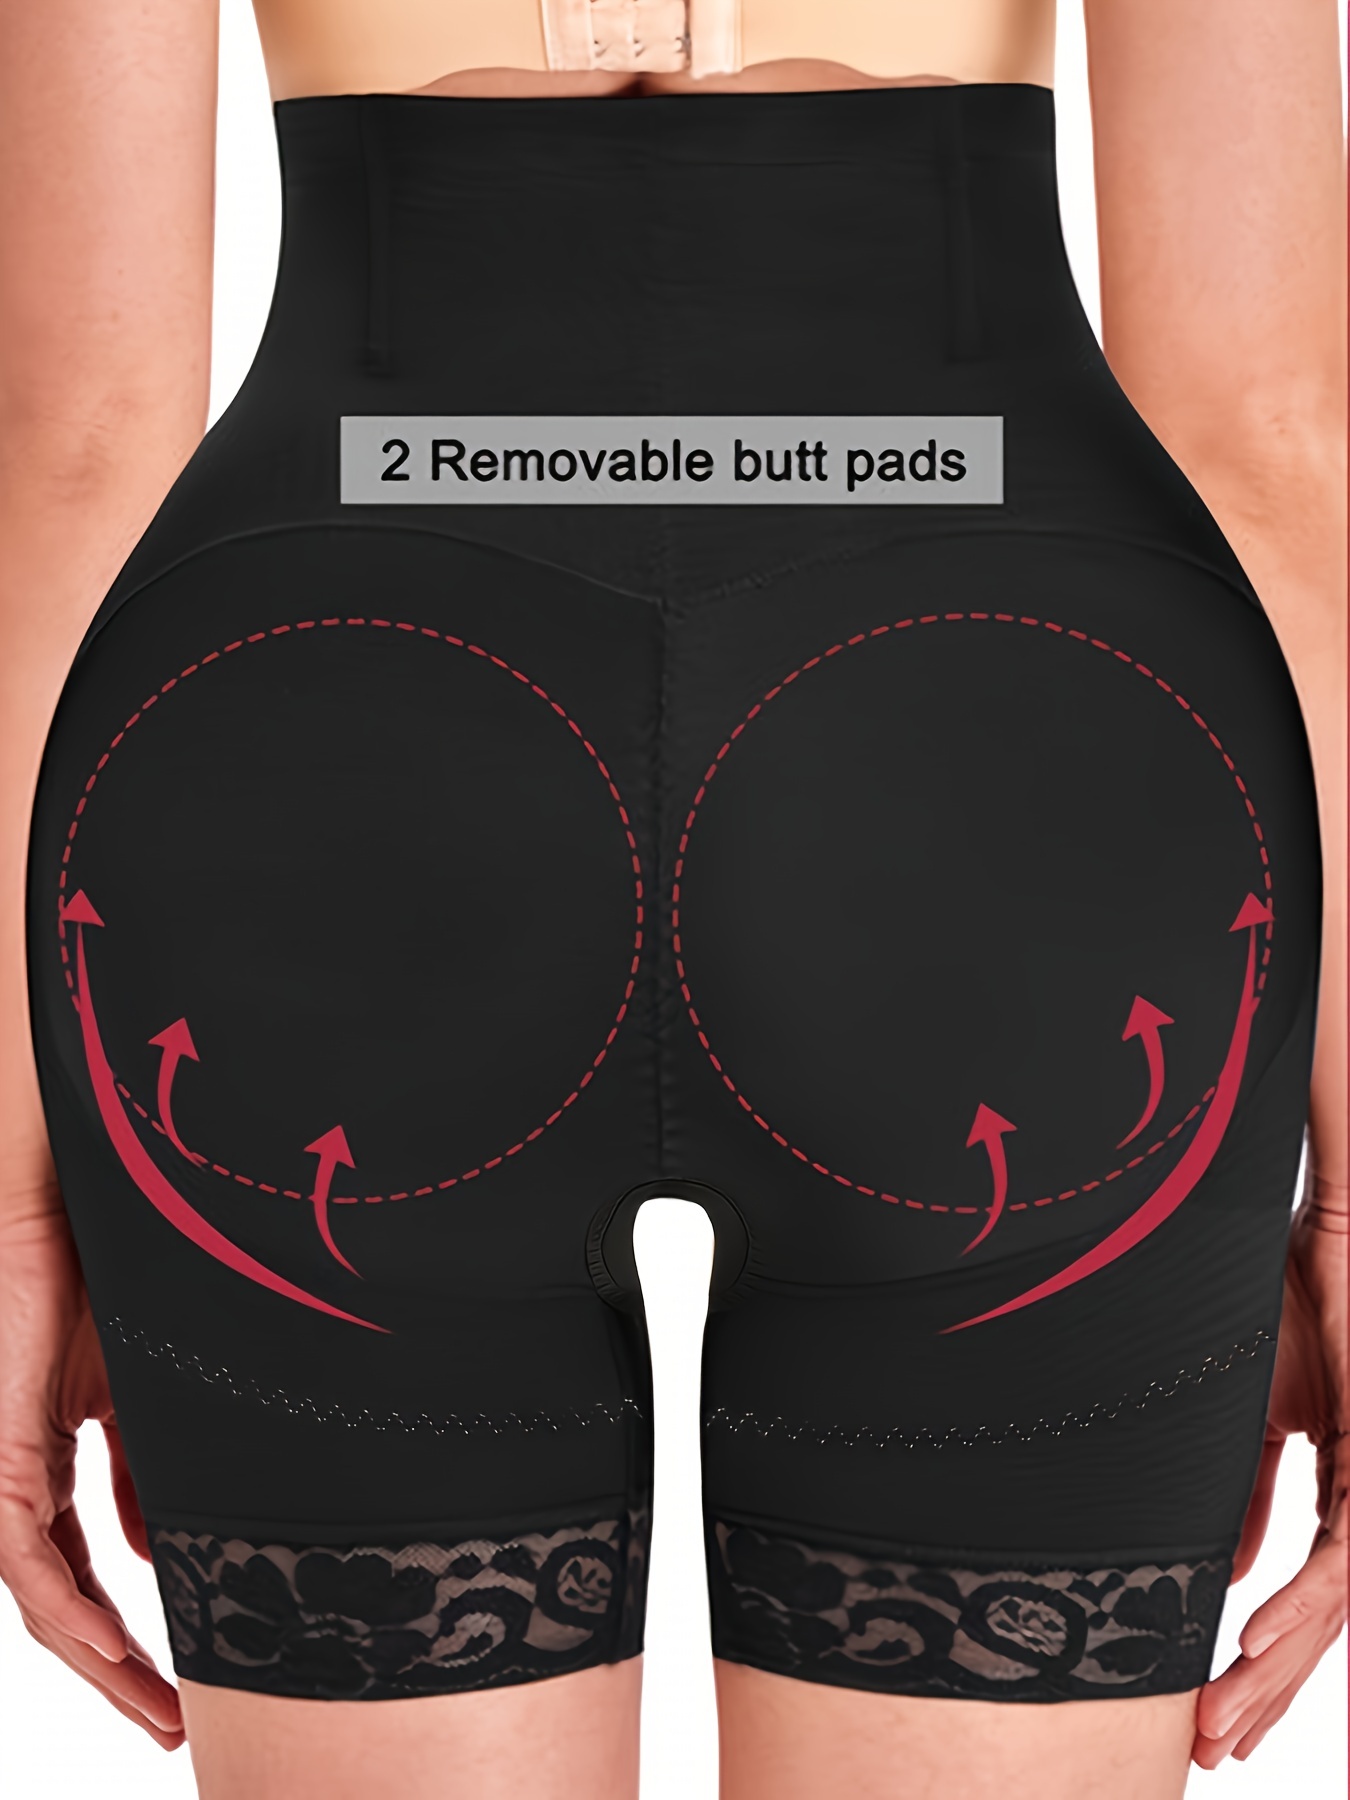 Butt Lifter Body Shaper Bum Lift Pants Buttock Enhancer Shorts